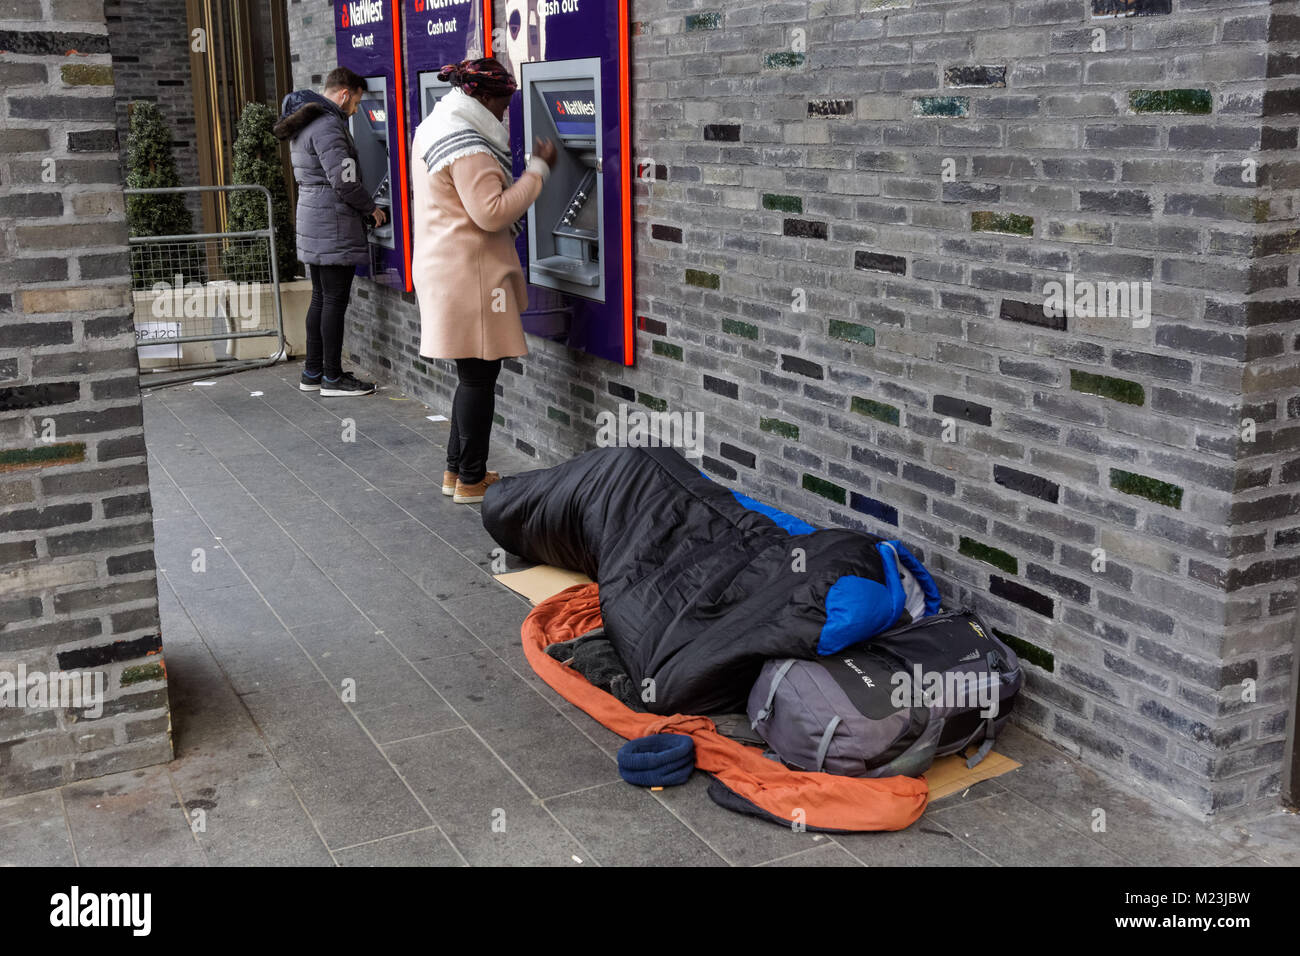 Person schlafen Neben Natwest ATM Geldautomaten in London, England, Vereinigtes Königreich, Großbritannien Stockfoto